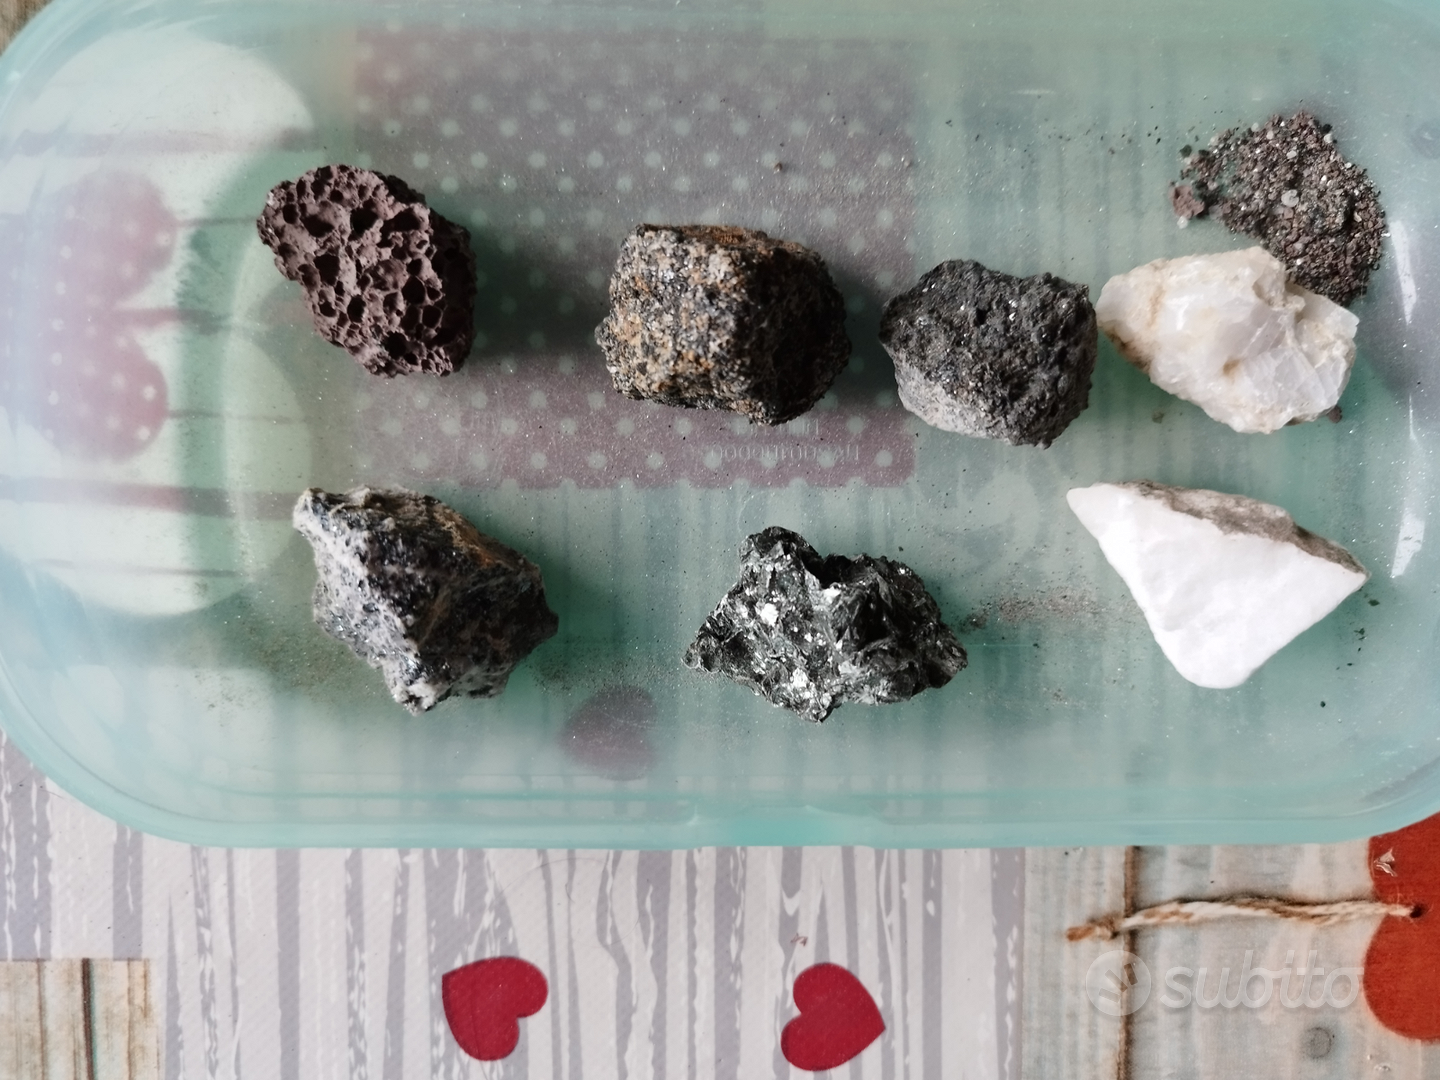 Collezione minerali e gemme - Annunci Bologna